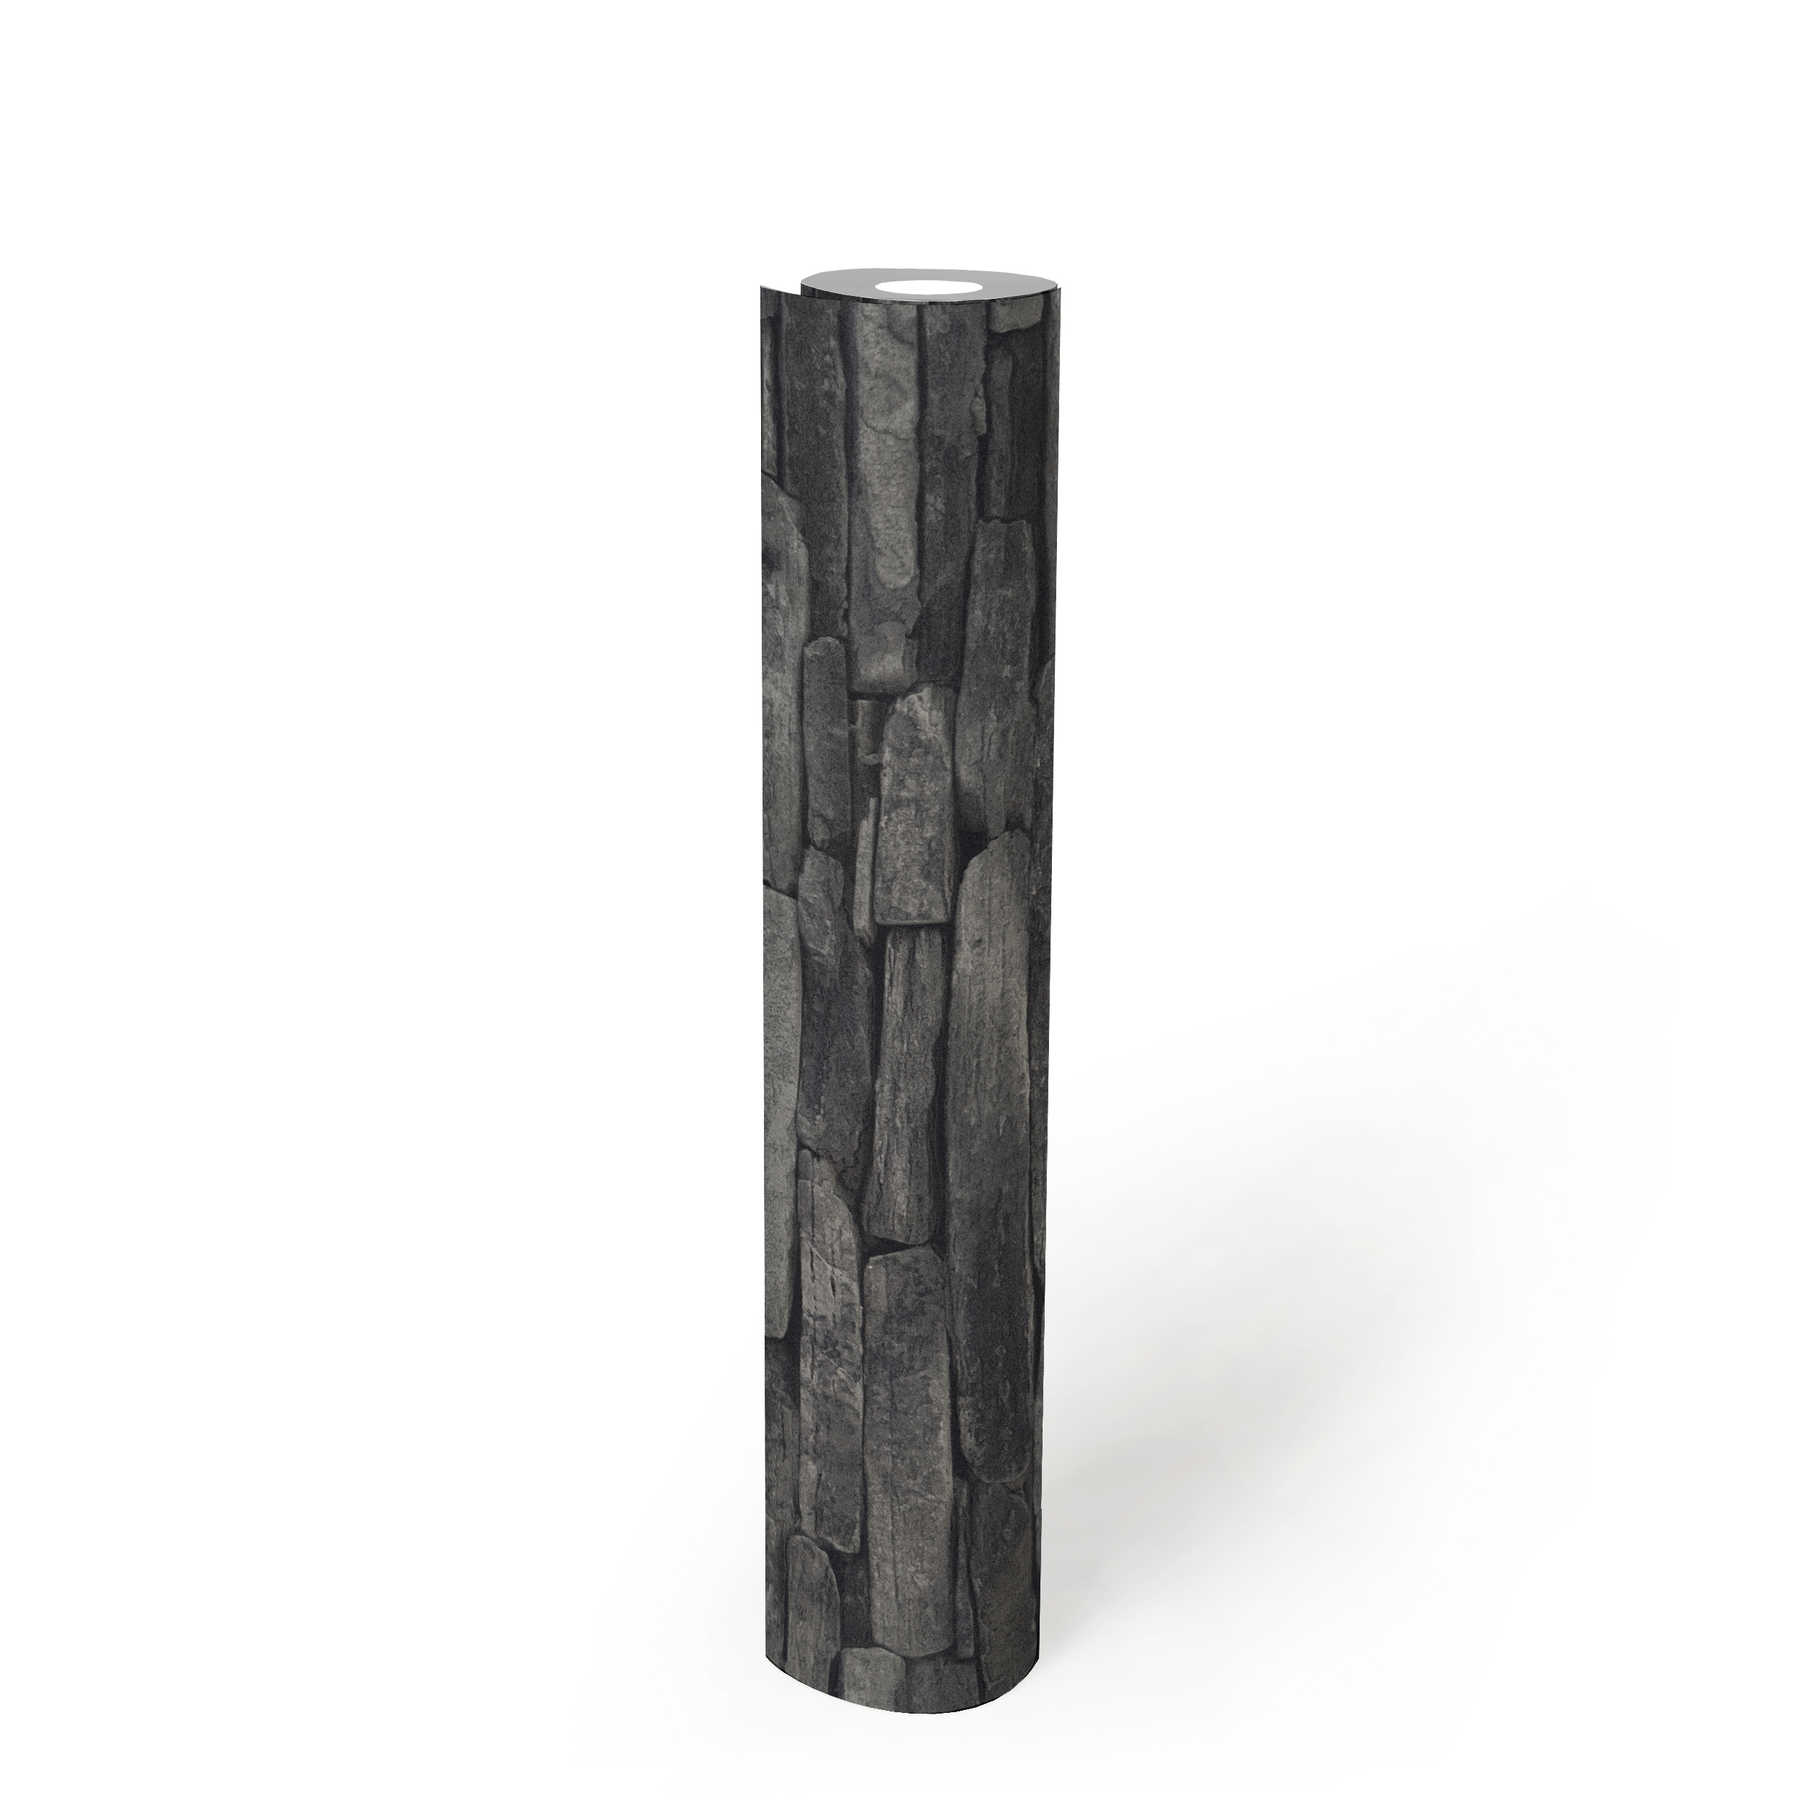             Papel pintado con aspecto de piedra, piedras naturales oscuras y efecto 3D - gris, negro
        